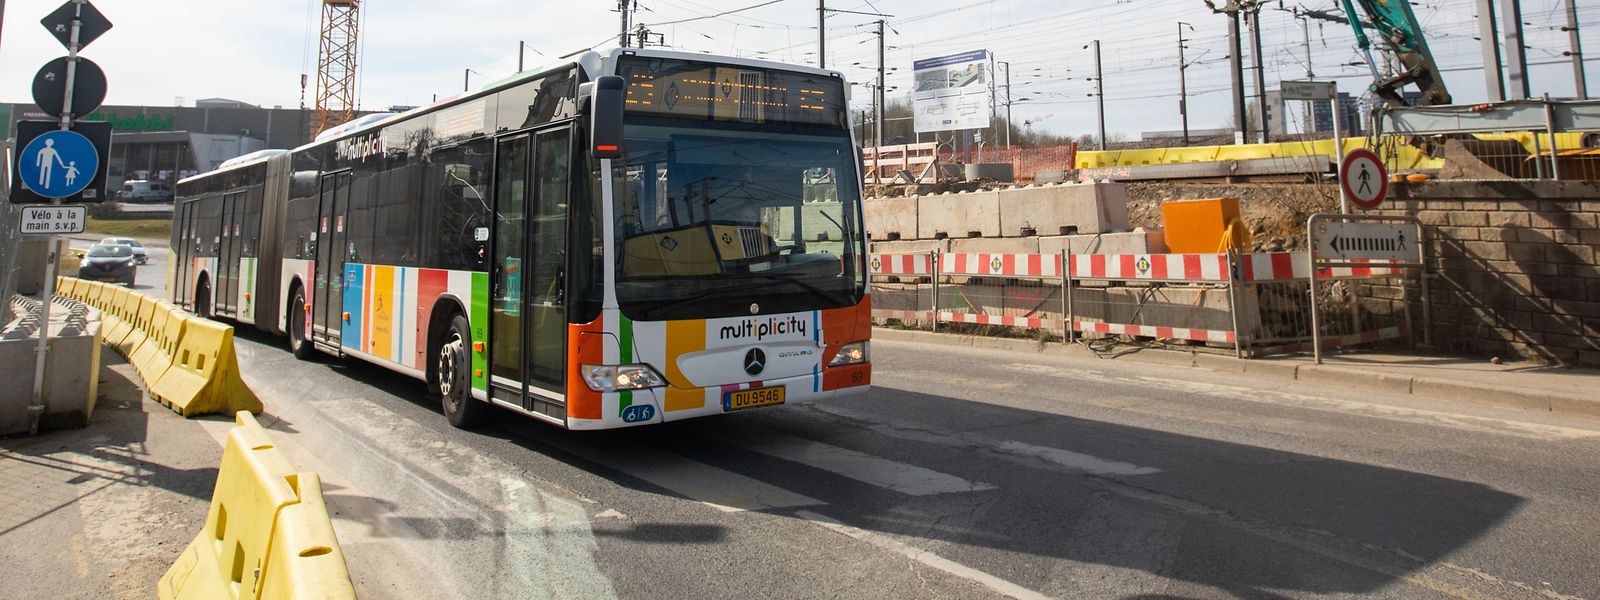 Für die Nutzer des öffentlichen Transports steht ebenfalls eine Umstellung an. Während das für die städtischen Buslinien zumeist einen Umweg bedeutet, verlaufen die RGTR-Linien nun direkter.